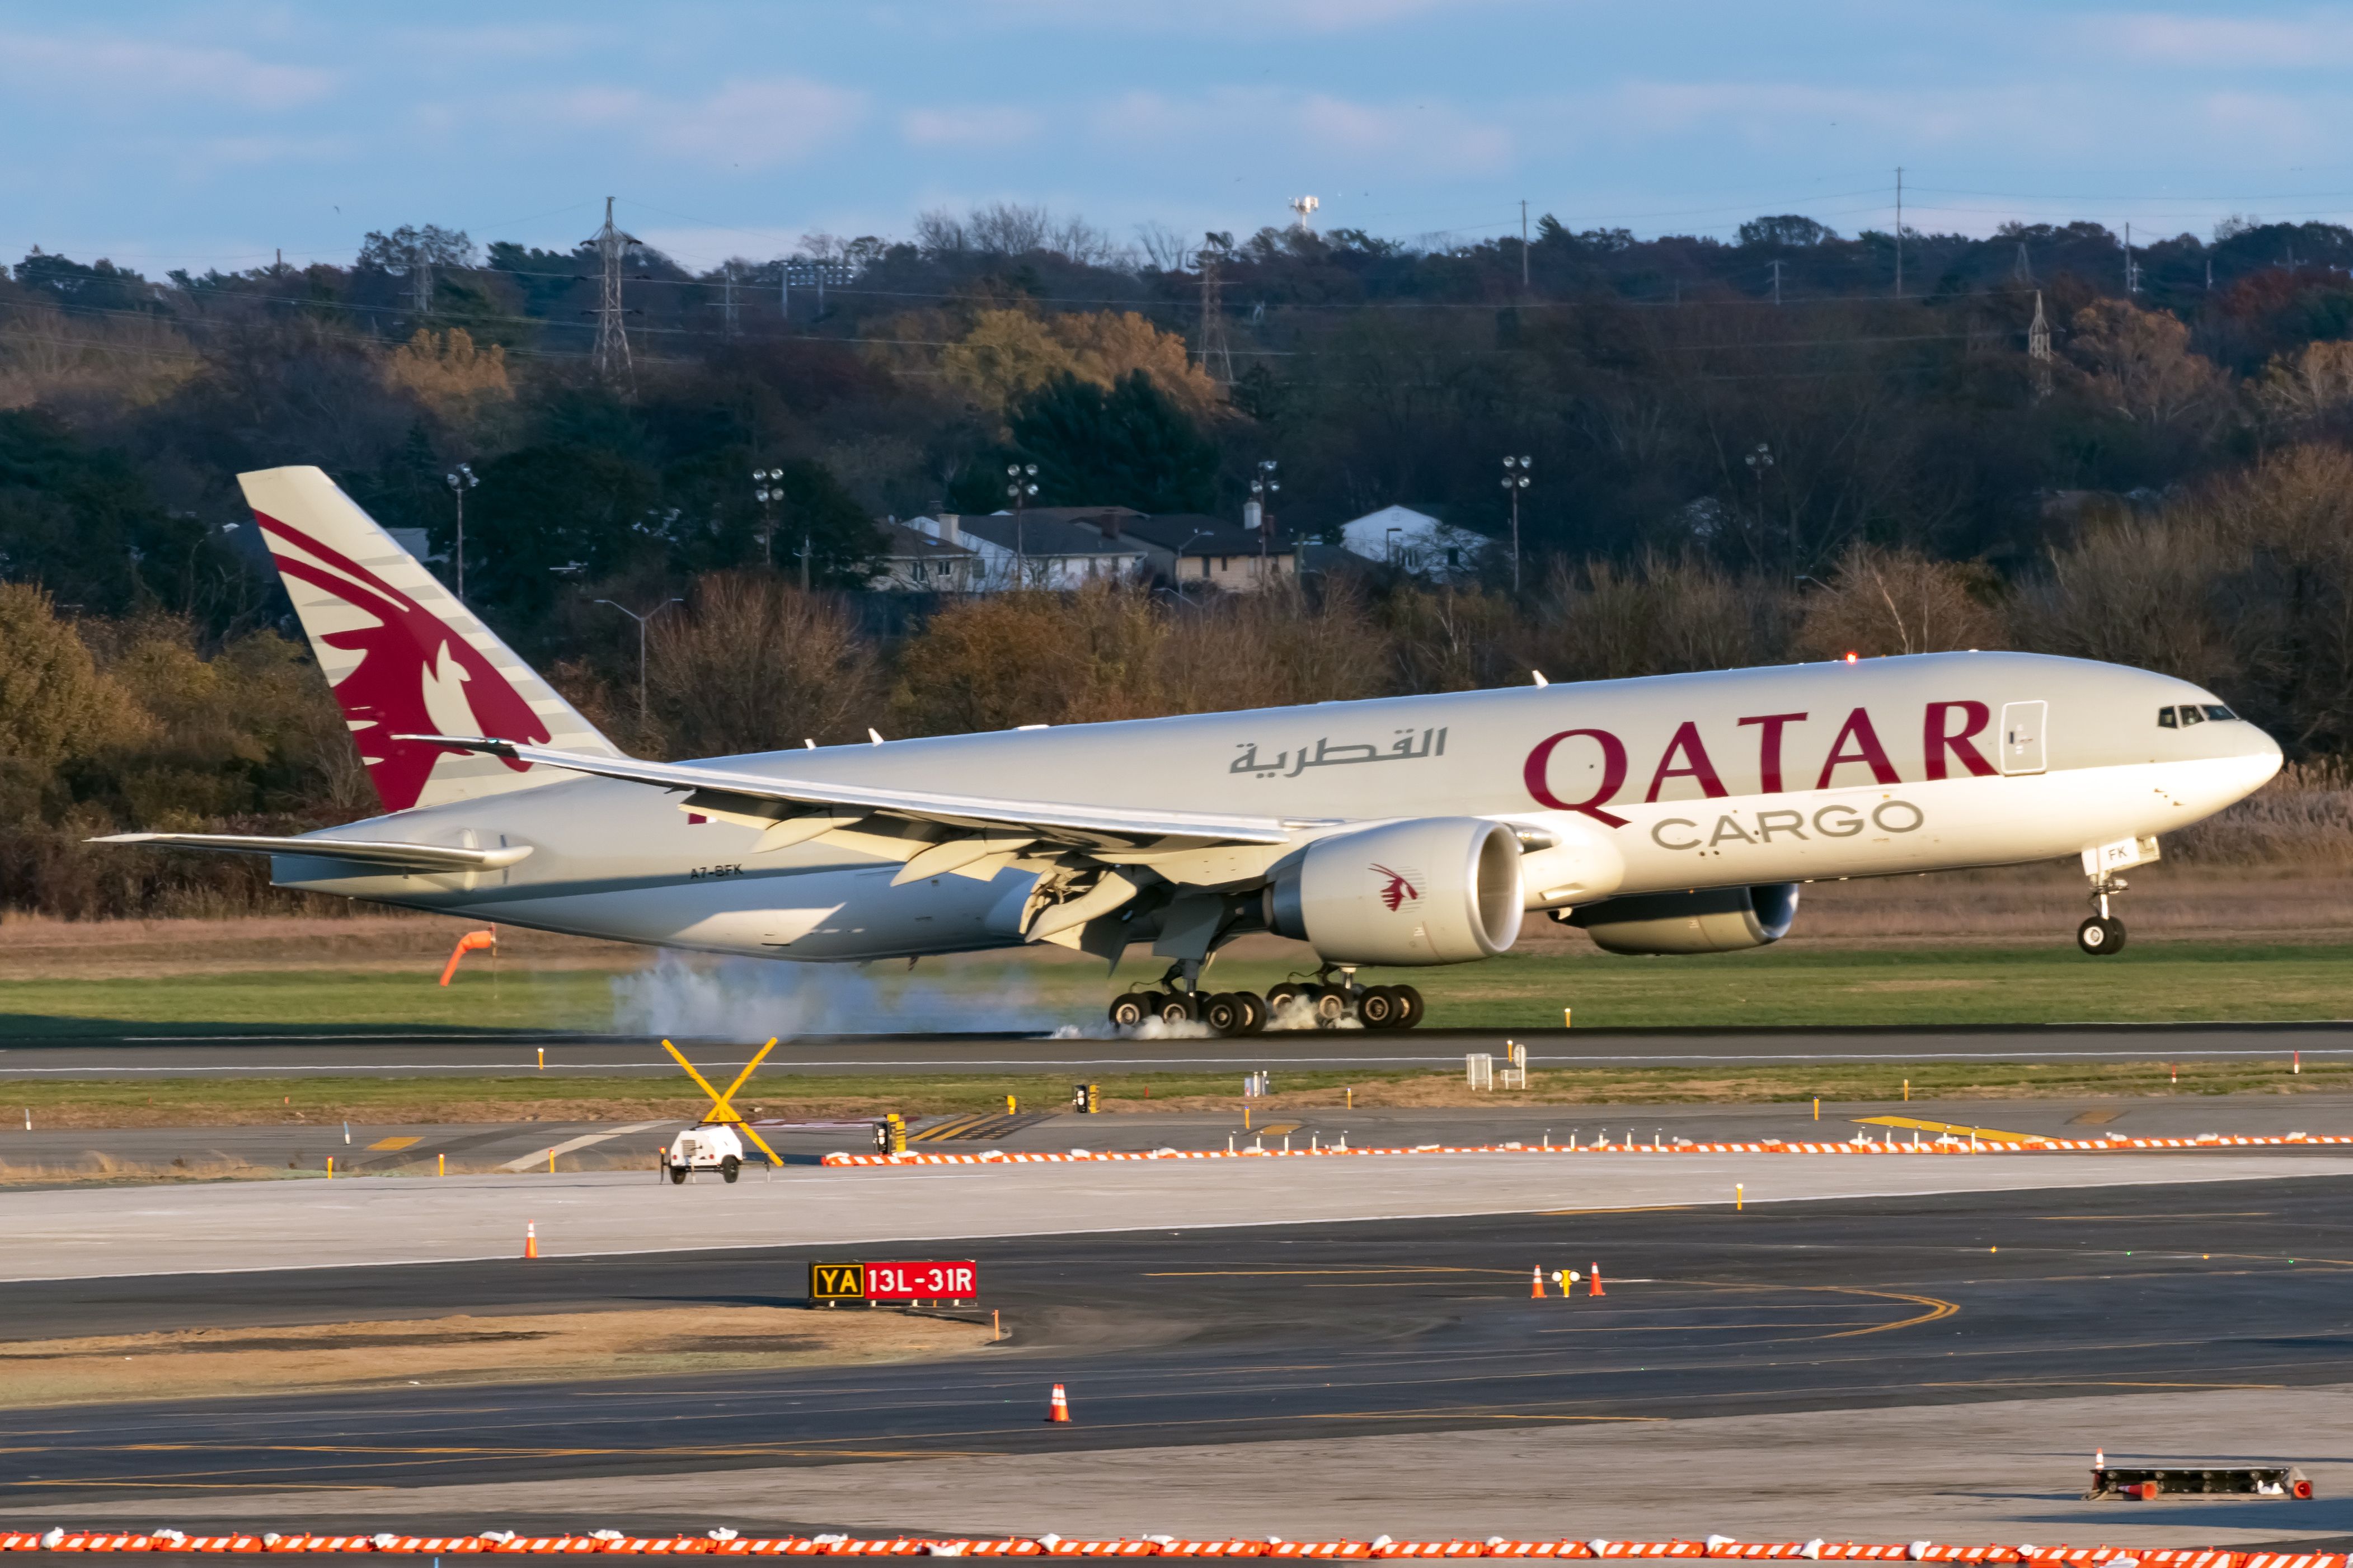 Qatar Airways Cargo Boeing 777 at JFK Airport